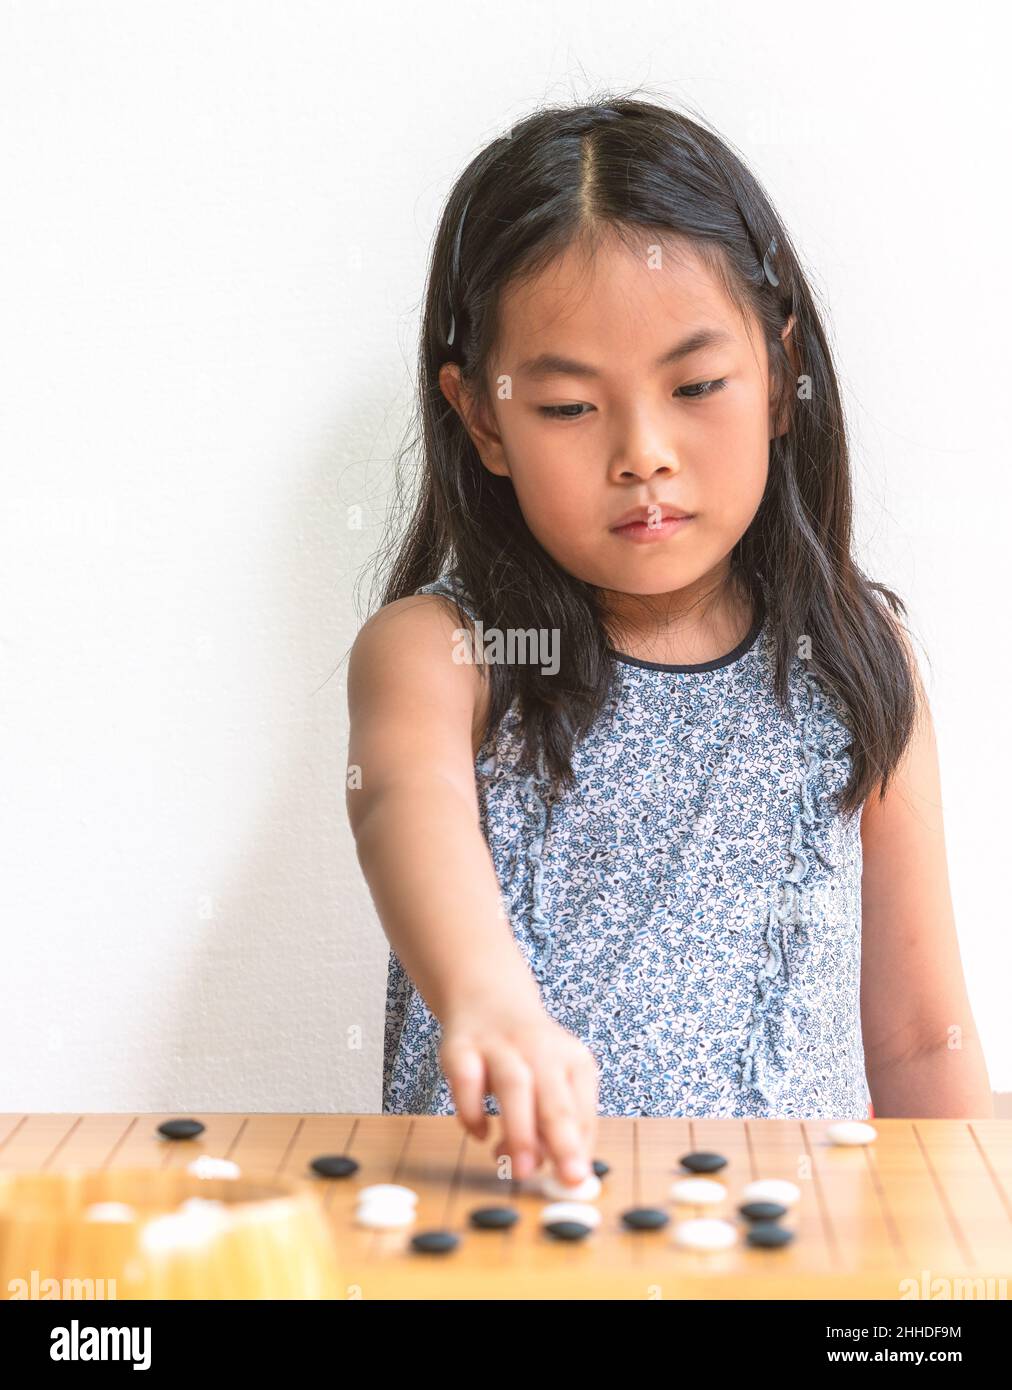 Retrato linda niña asiática juega Go, el juego de mesa japonés o juego de  mesa chino, enfoque en el juego de mesa, fondo de pared blanco, ojos en la  ga Fotografía de